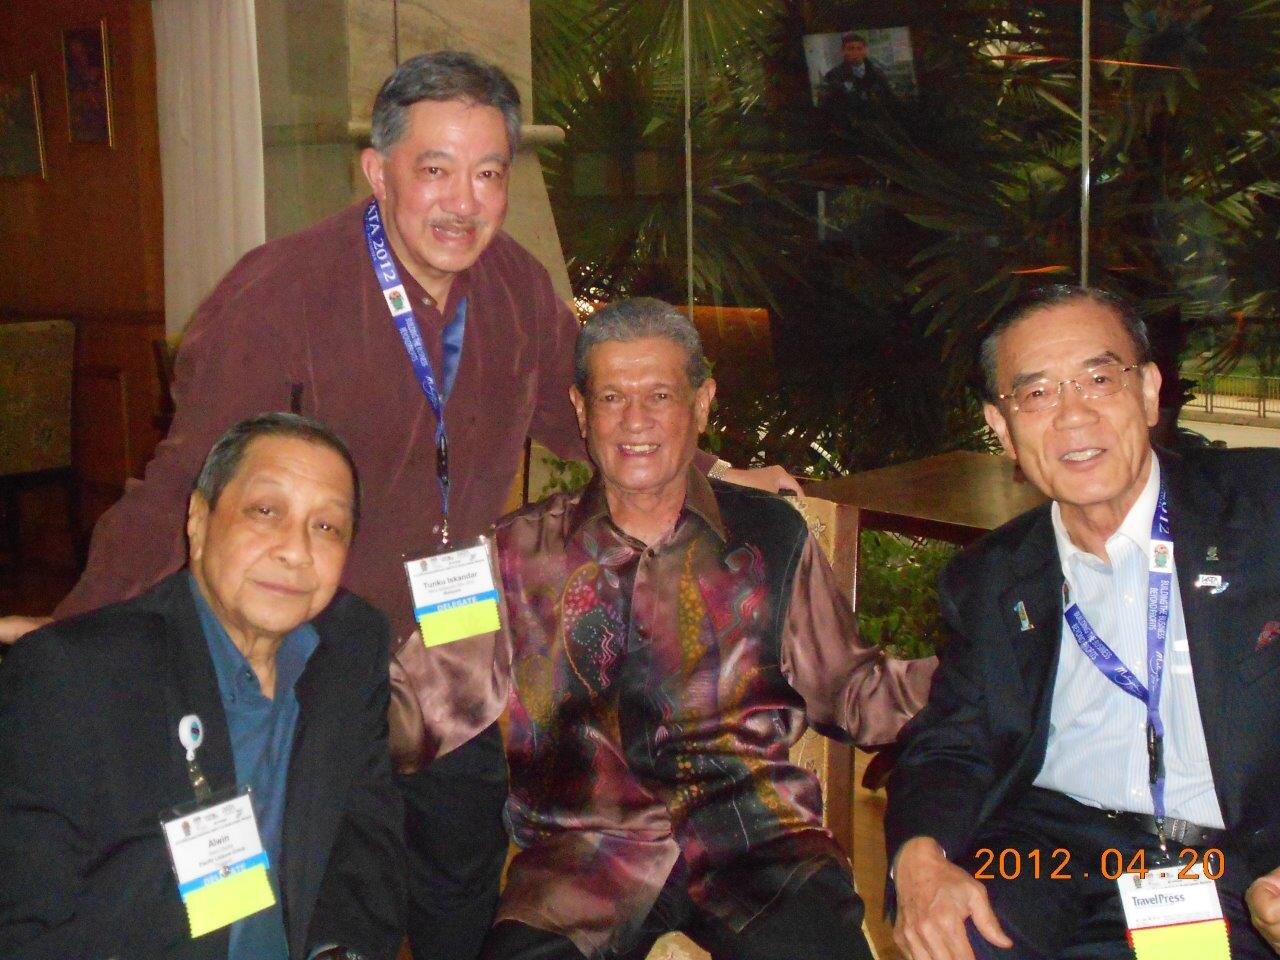 2012: PATA Annual Summit in Kuala Lumpur, Malaysia